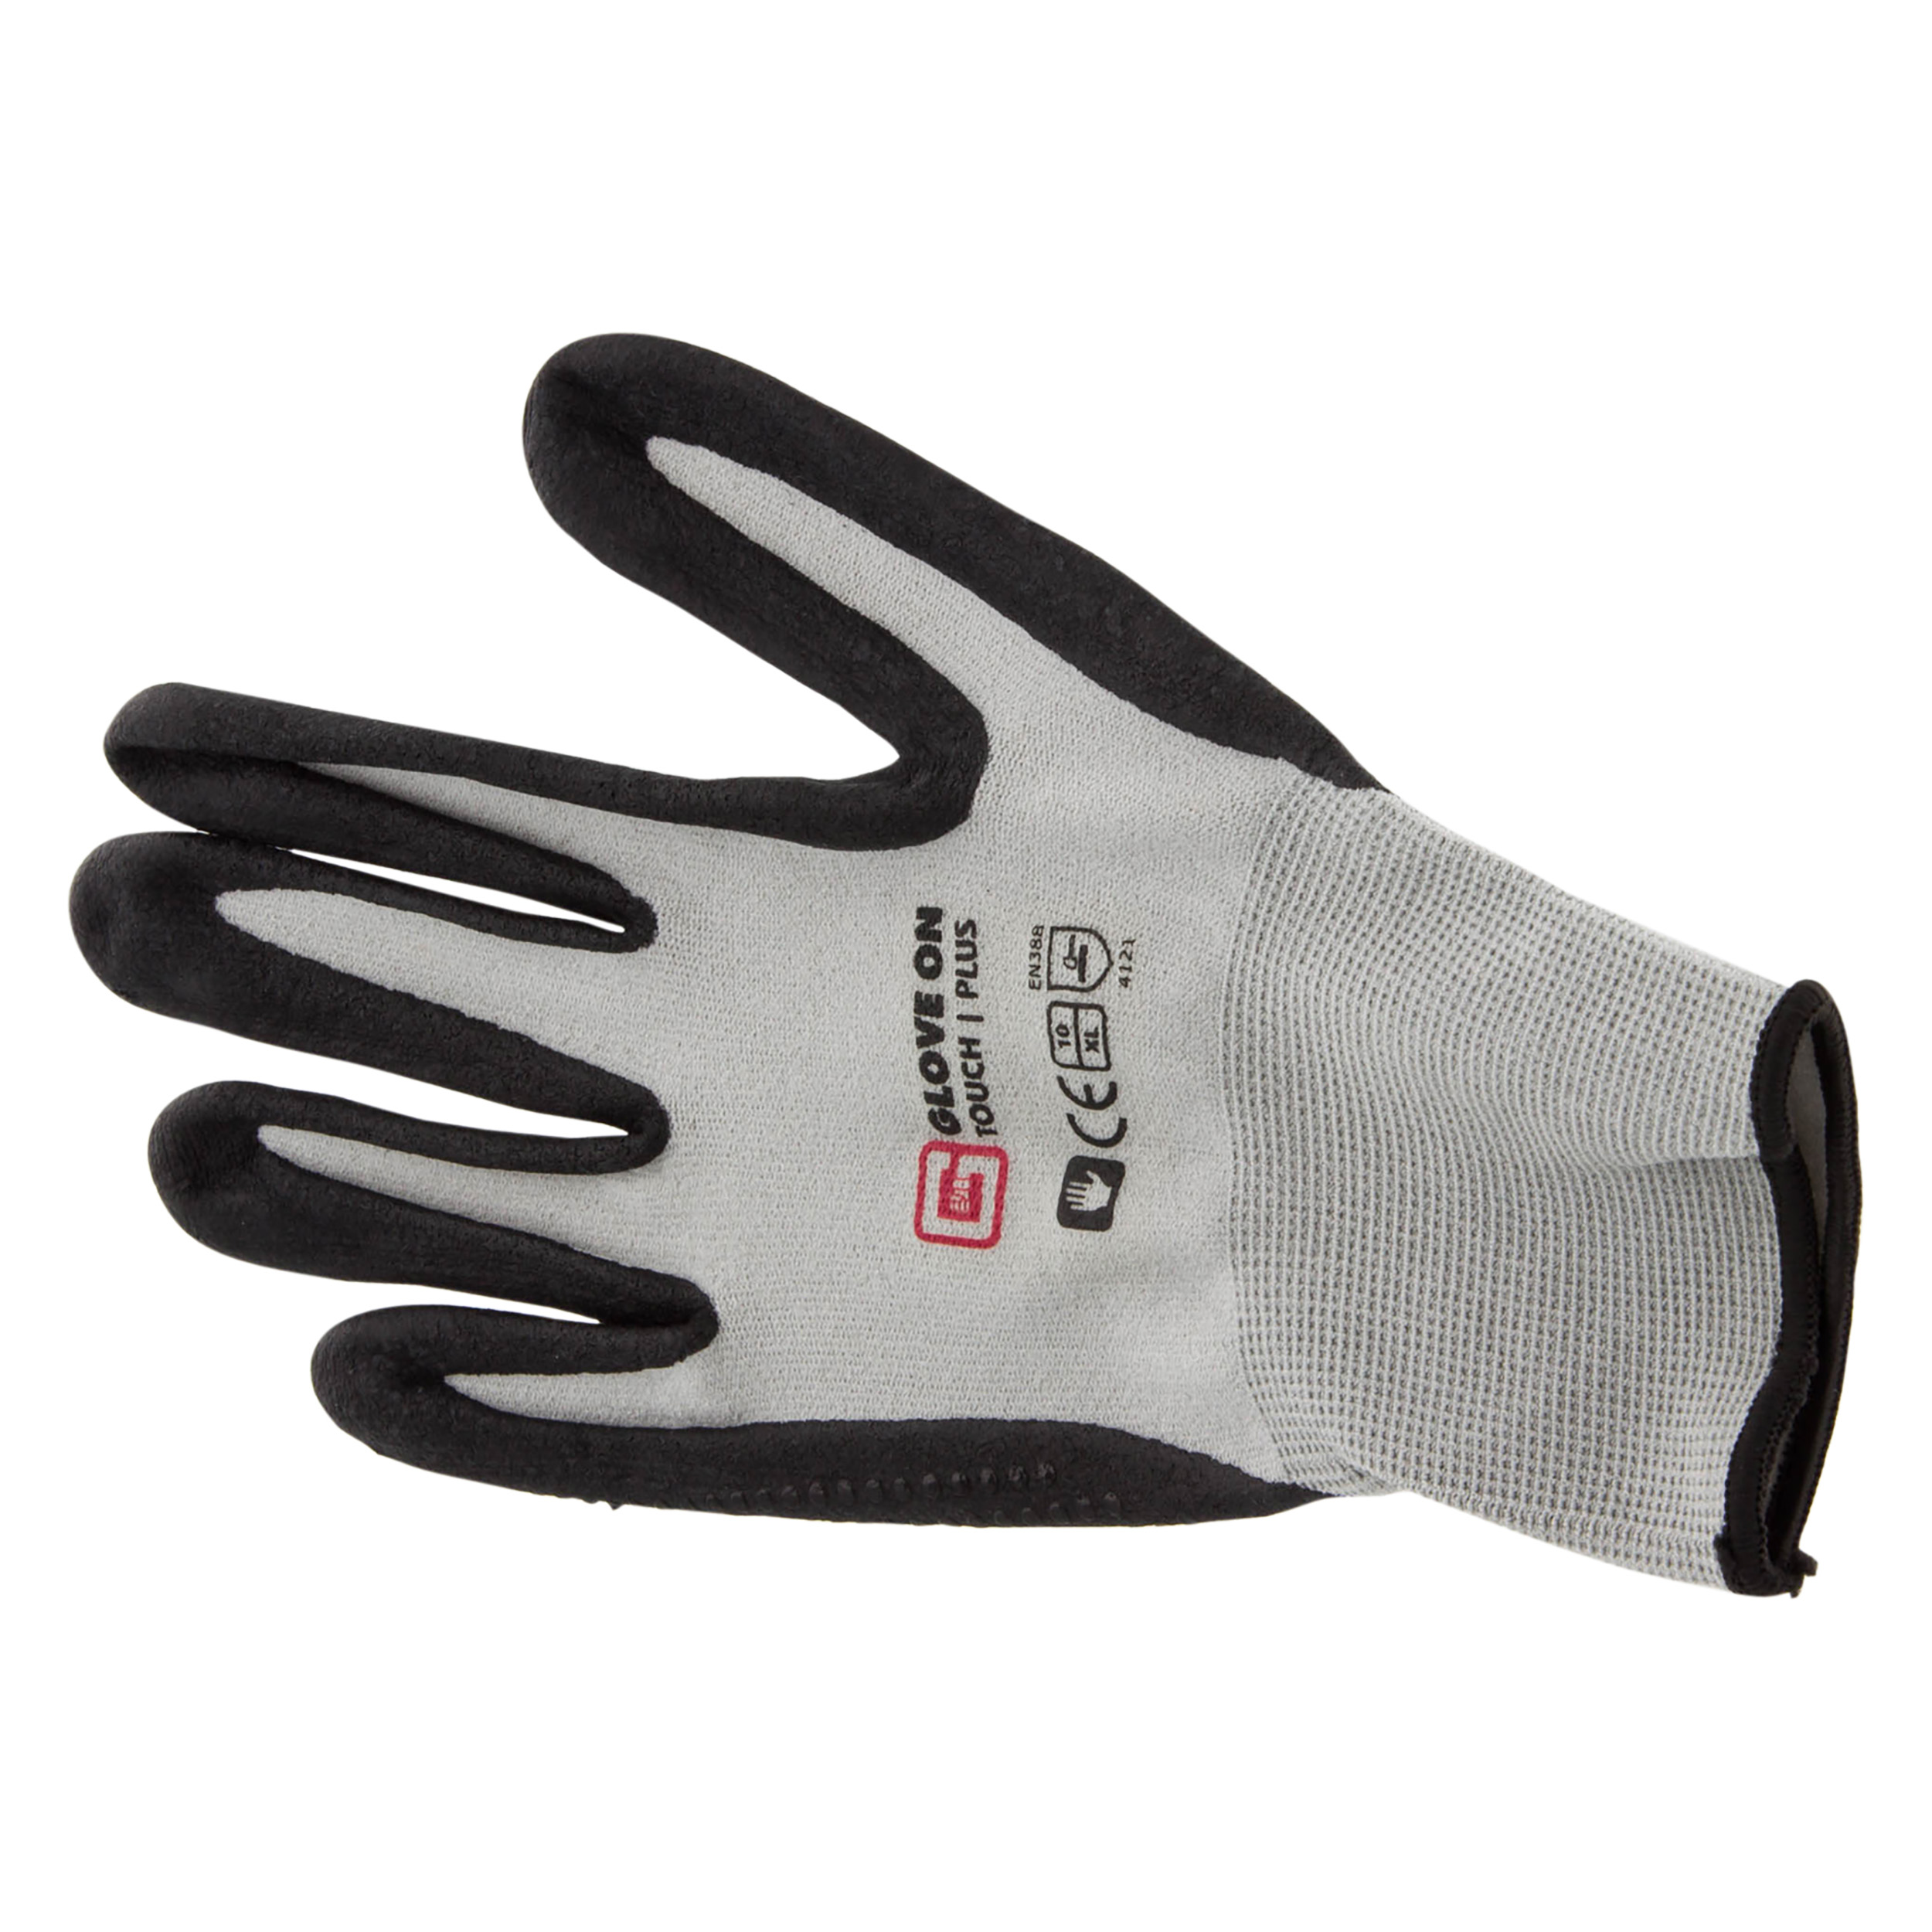 21.080.20 Glove On Touch werkhandschoen touch plus - XL